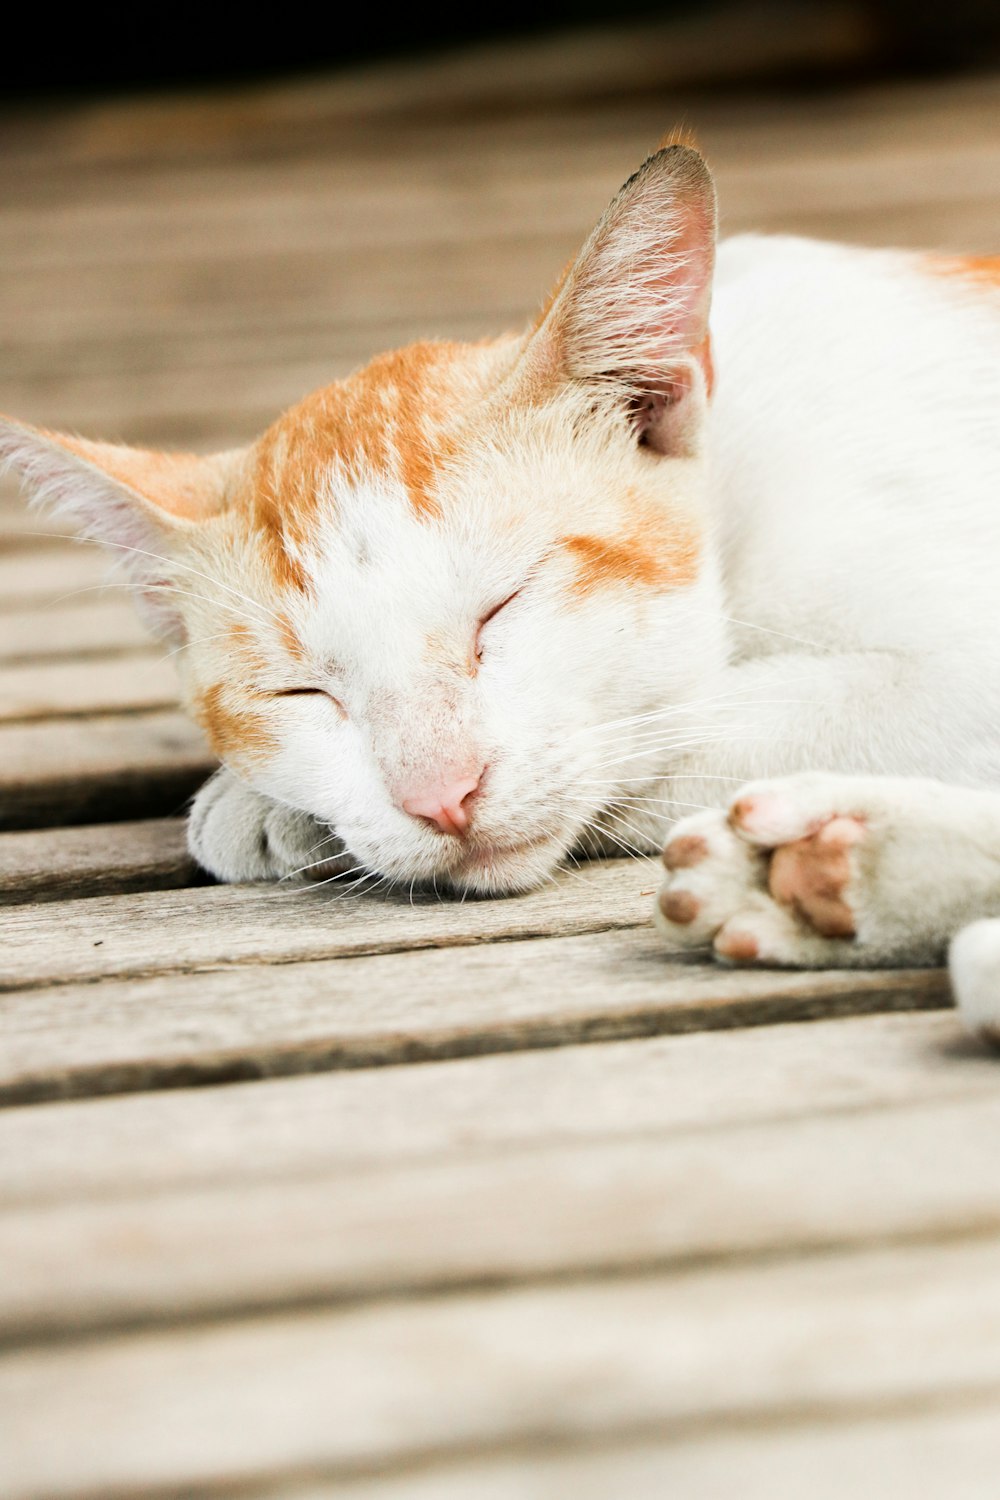 orange and white tabby cat lying on wooden floor